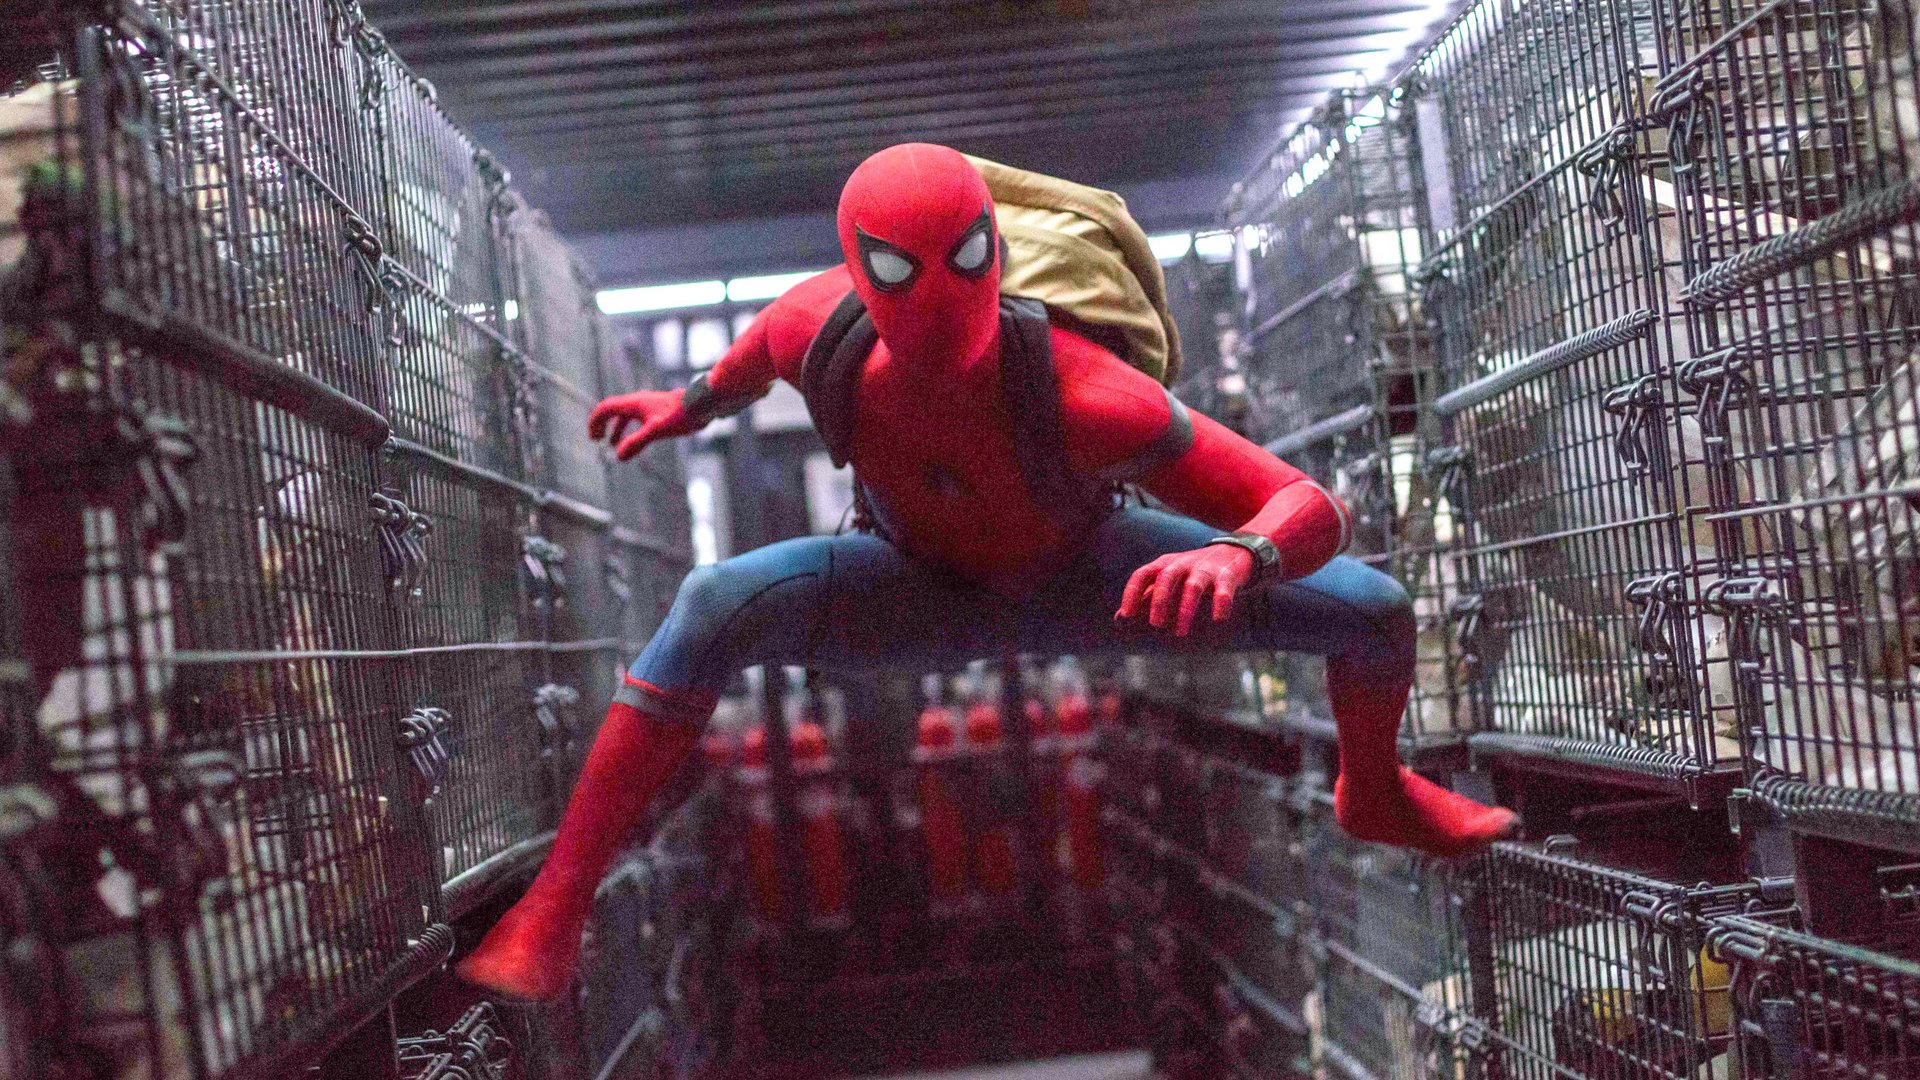 #„Spider-Man 4“ könnte noch Jahre auf sich warten lassen